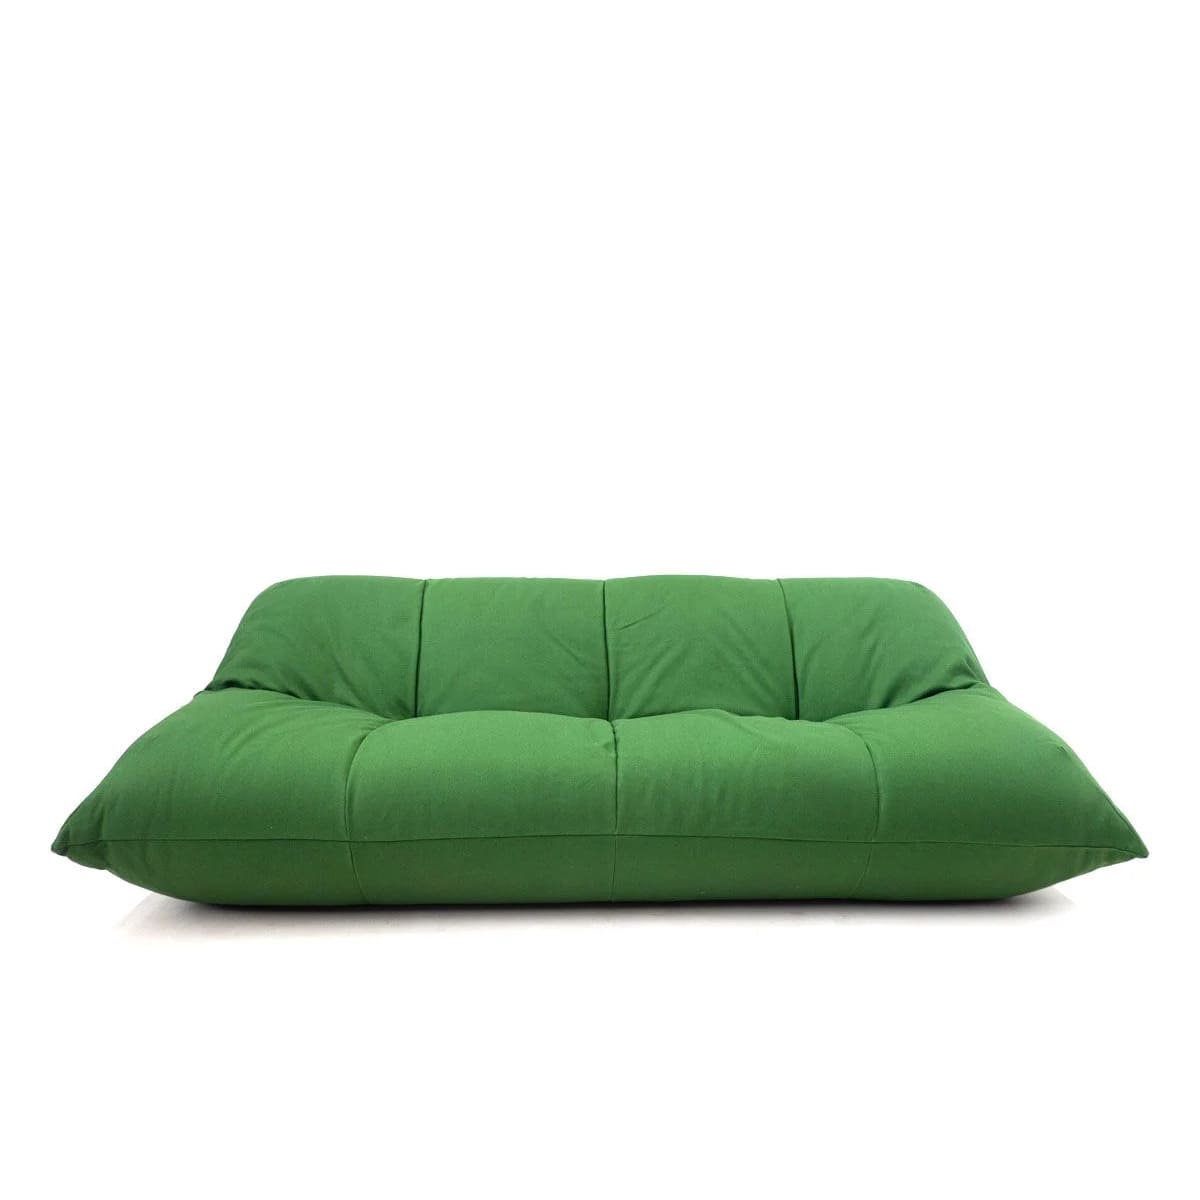 Le sofa PAPILLON sera le prochain canapé qui habitera votre espace de détente GIOVANNETTI